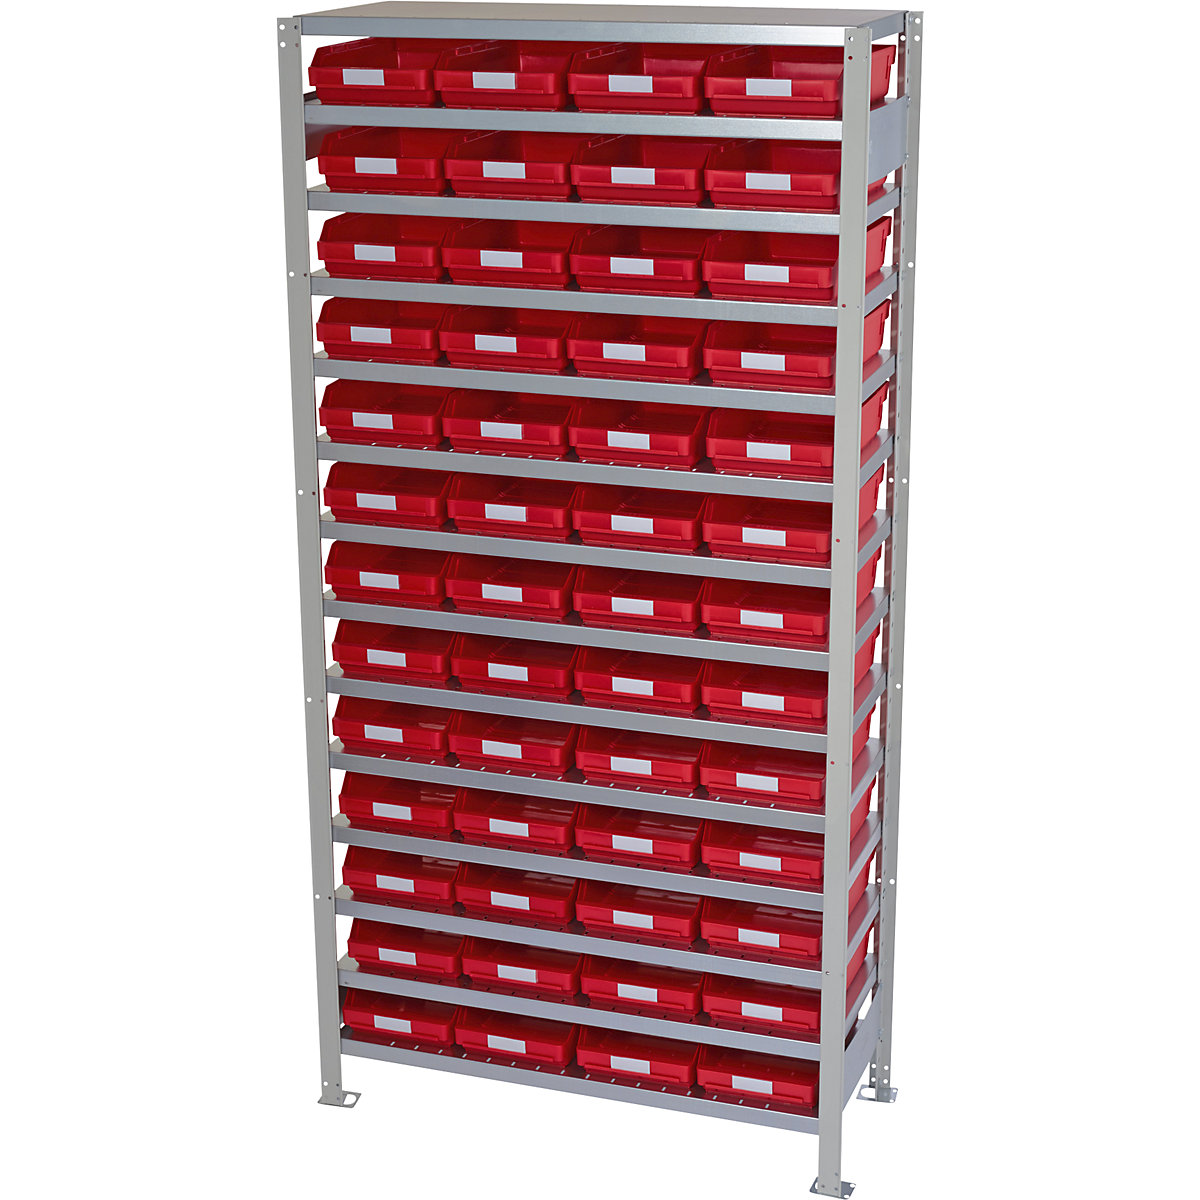 Estante de encaixar com caixas para estante – STEMO, altura da estante 2100 mm, estante básica, profundidade 500 mm, 52 caixas vermelhas-8